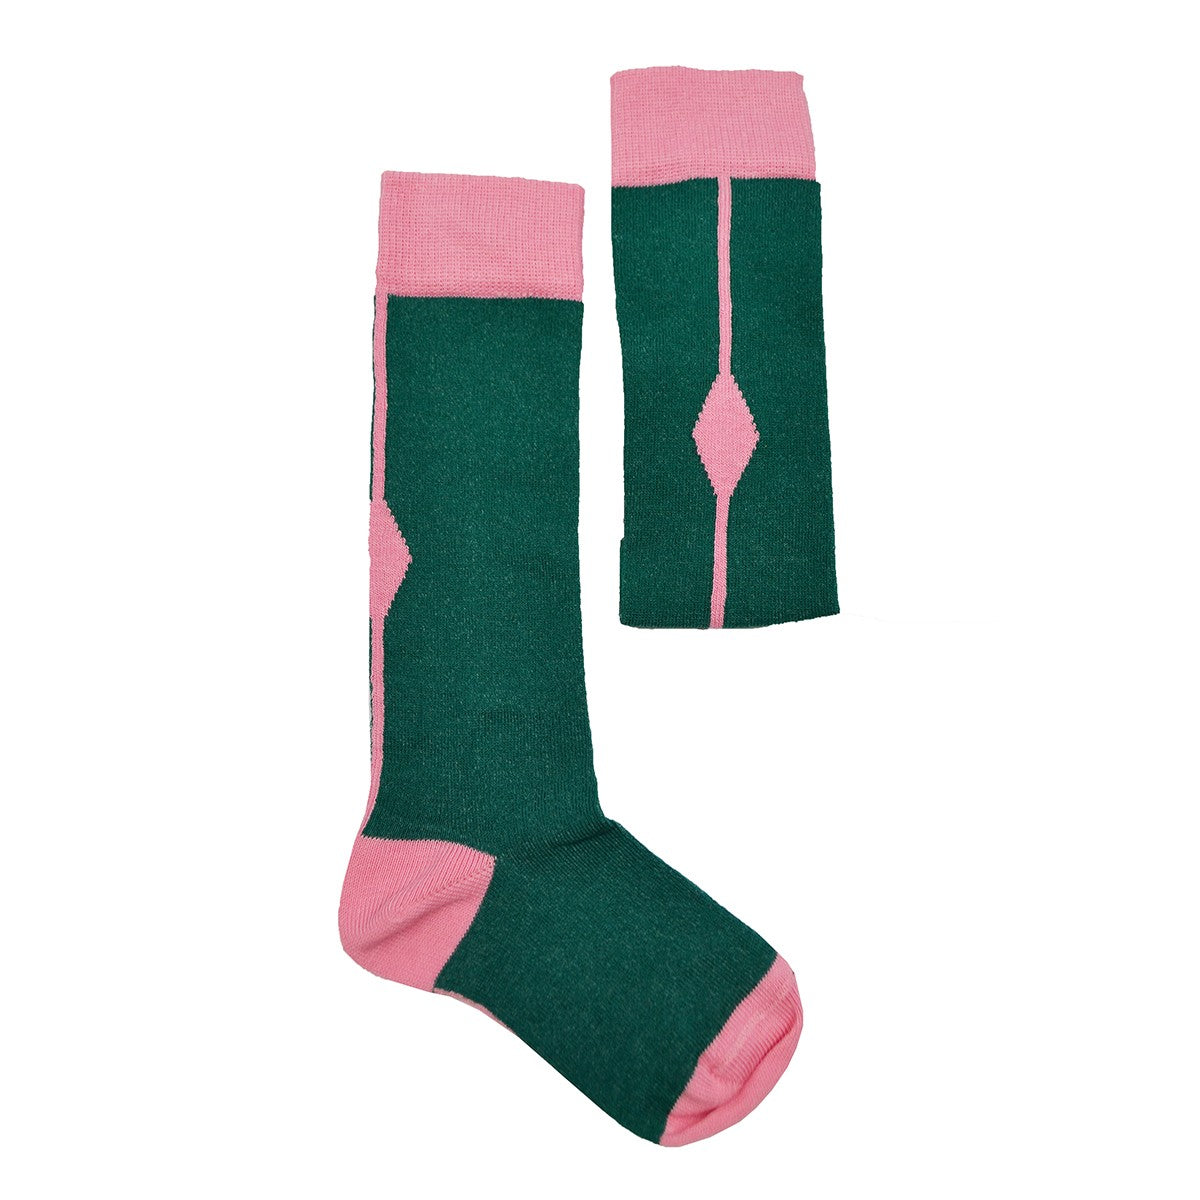 Baba Kidswear - Green Kneesocks Pink Square - Kniekousen Groen met Roze Ruit